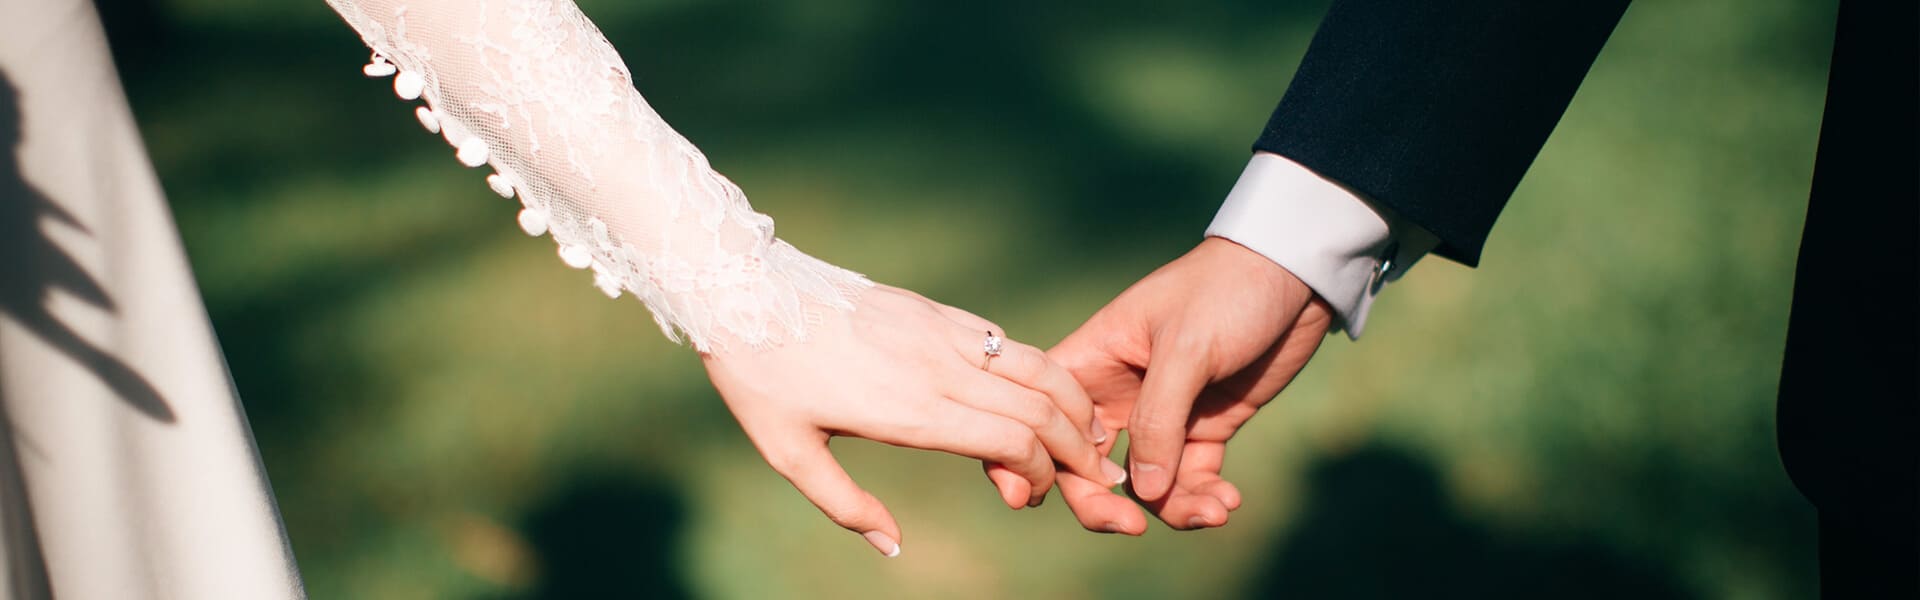 Svatba - Zámek Račice - luxusní svatba dle vašich přání